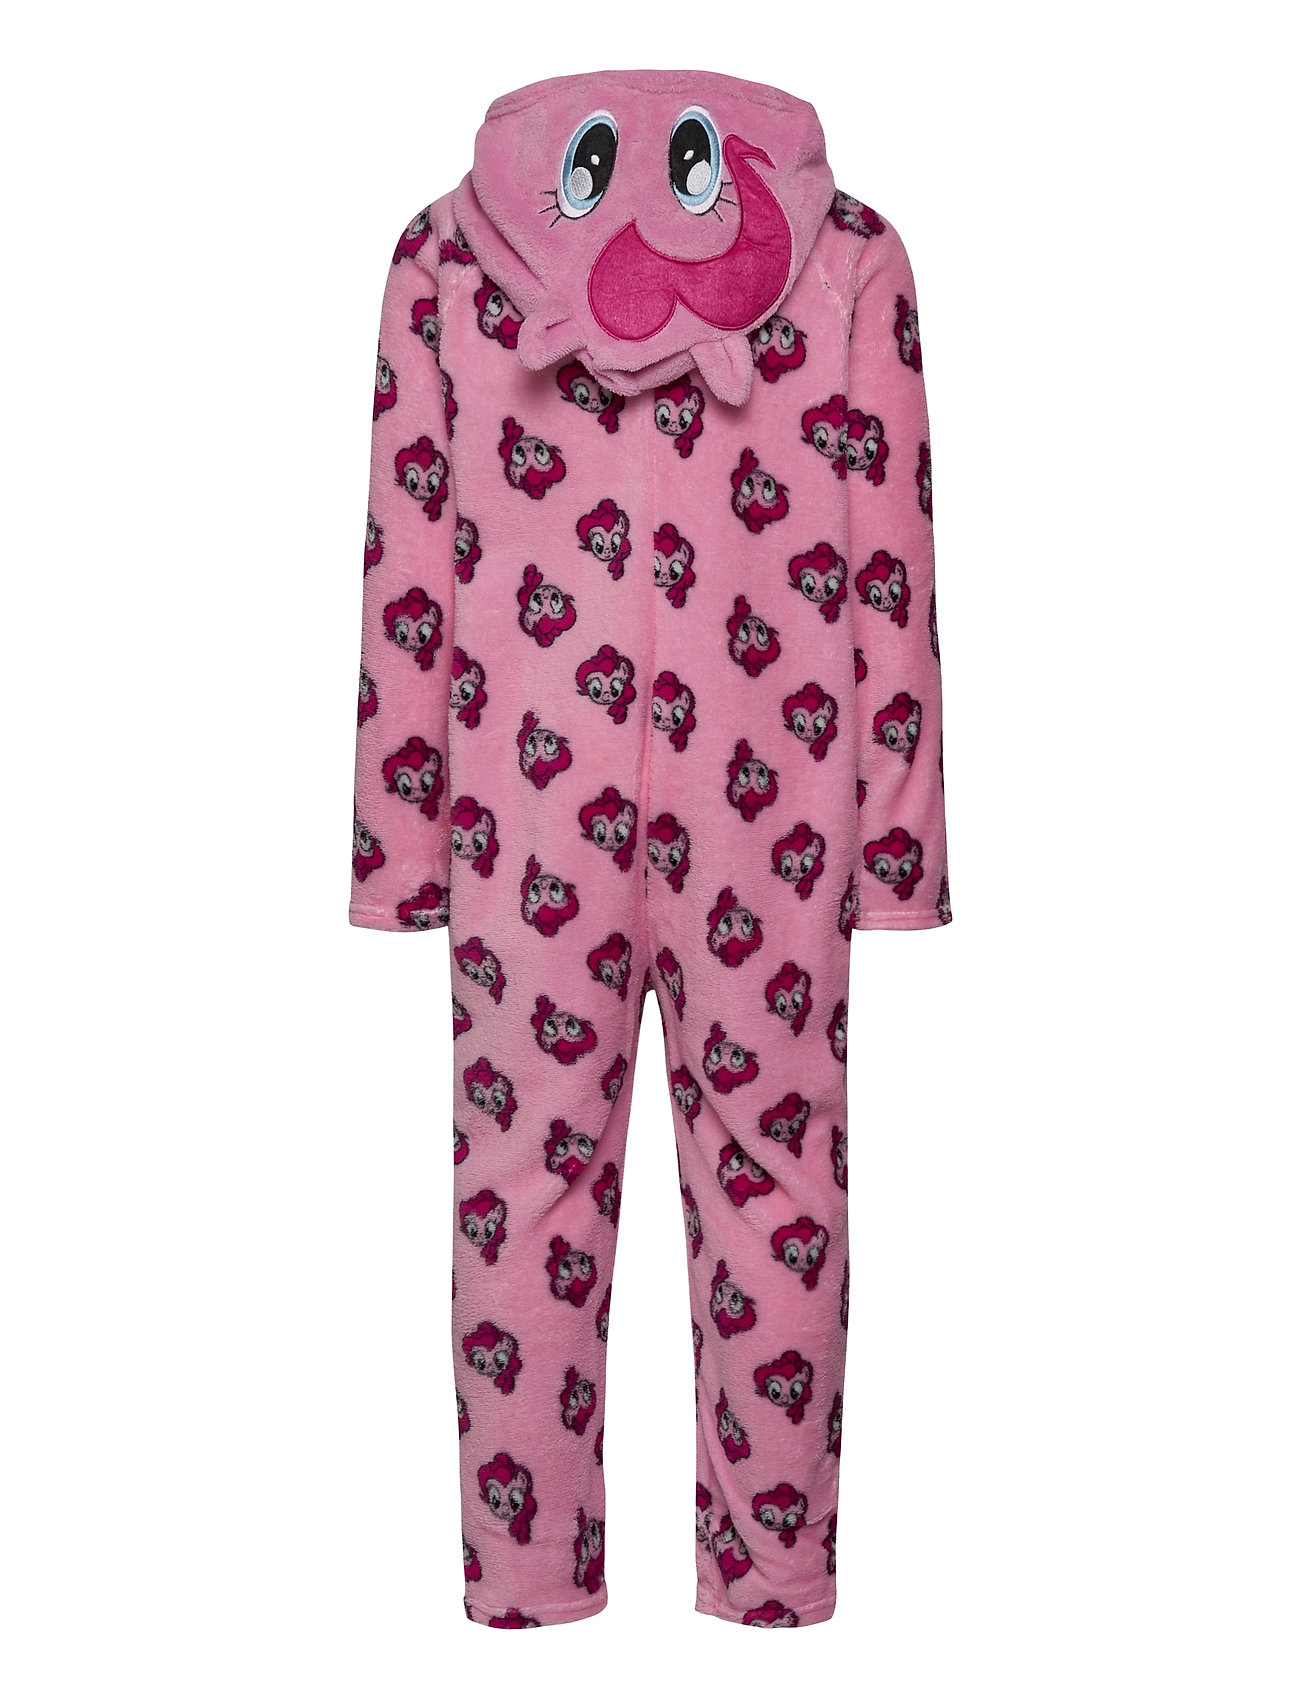 Pyjama Overall Pyjamas Sie Jumpsuit Lyserød My Little Pony